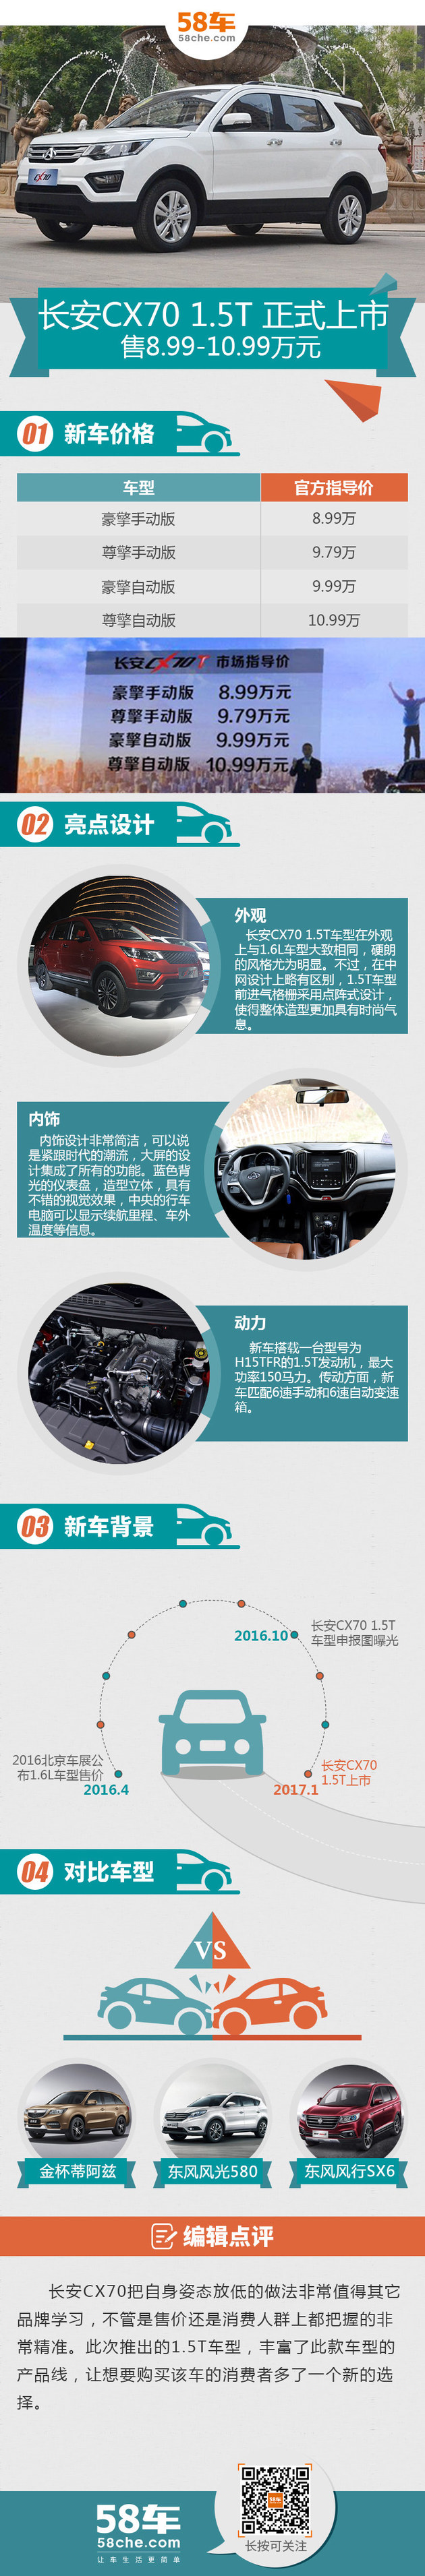 长安CX70 1.5T正式上市 售8.99-10.99万